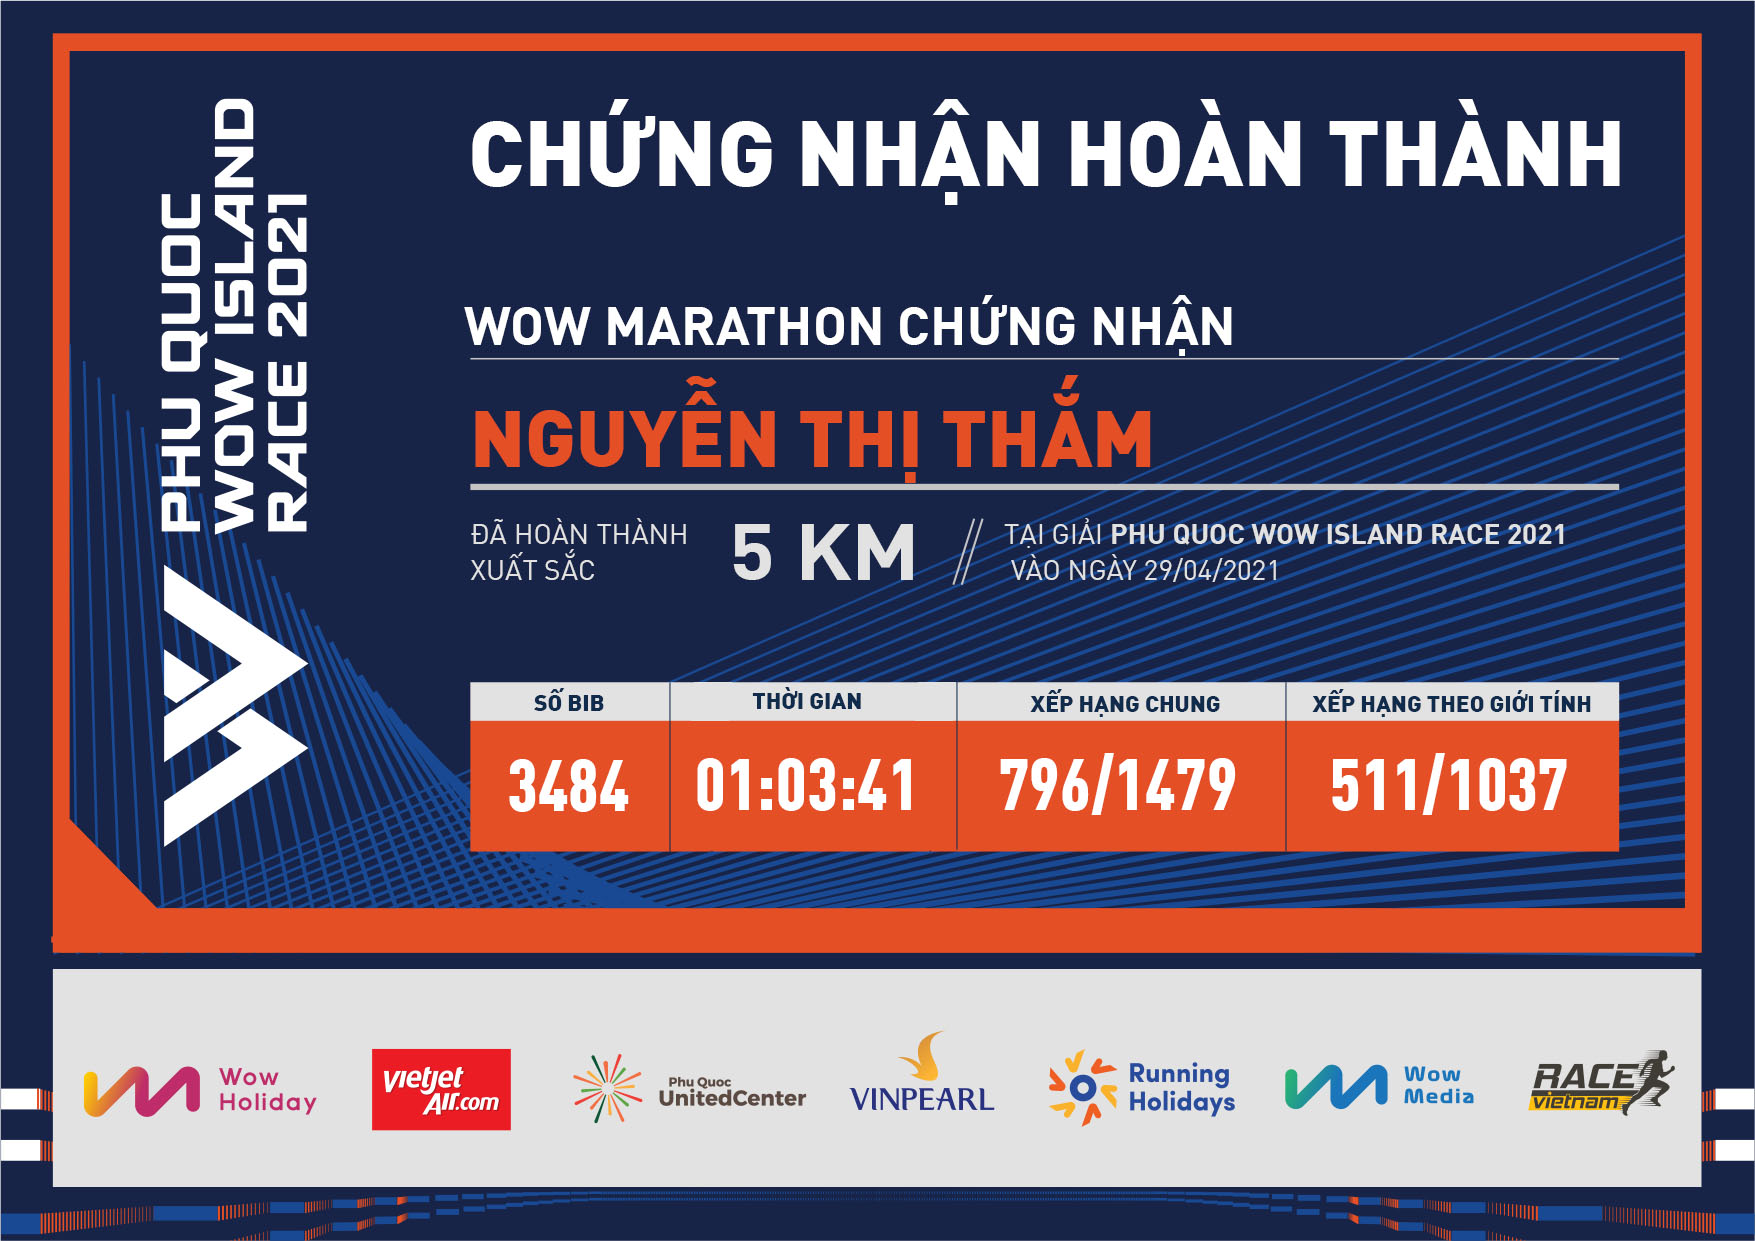 3484 - Nguyễn Thị Thắm